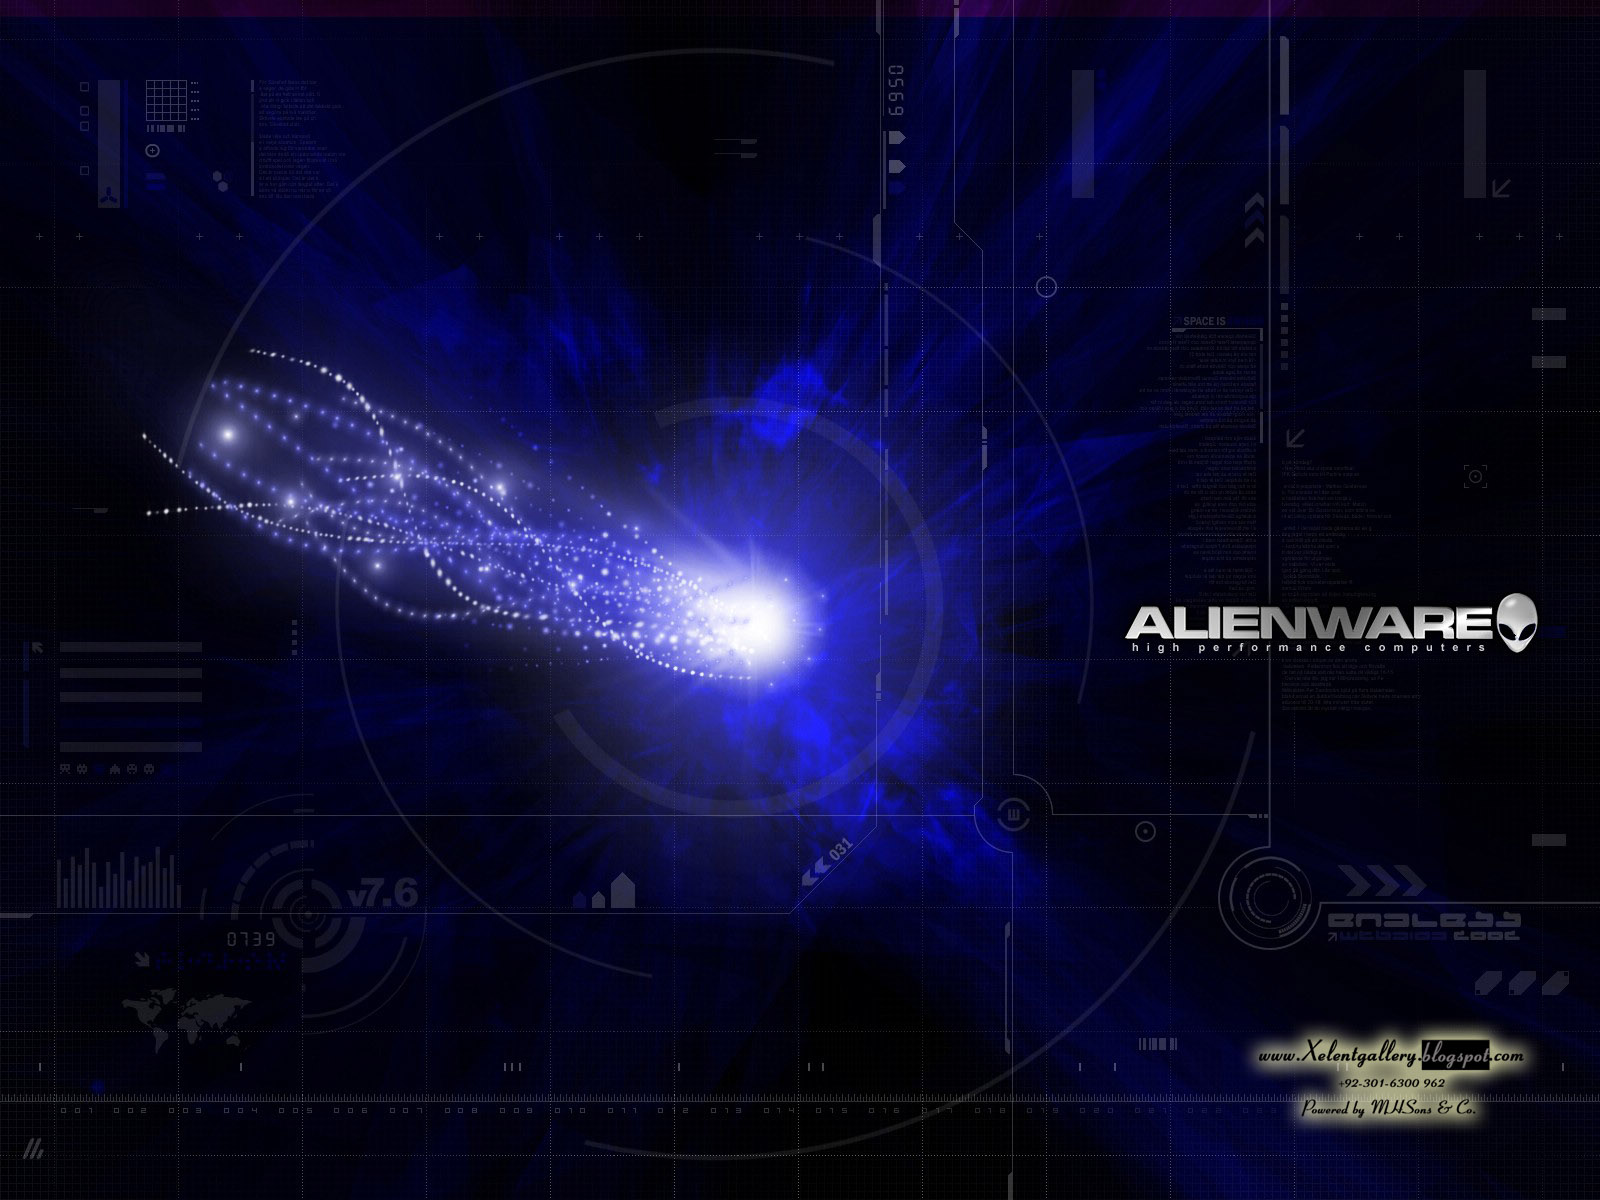 HD Alienware Wallpaper Pack Xelent Gallery